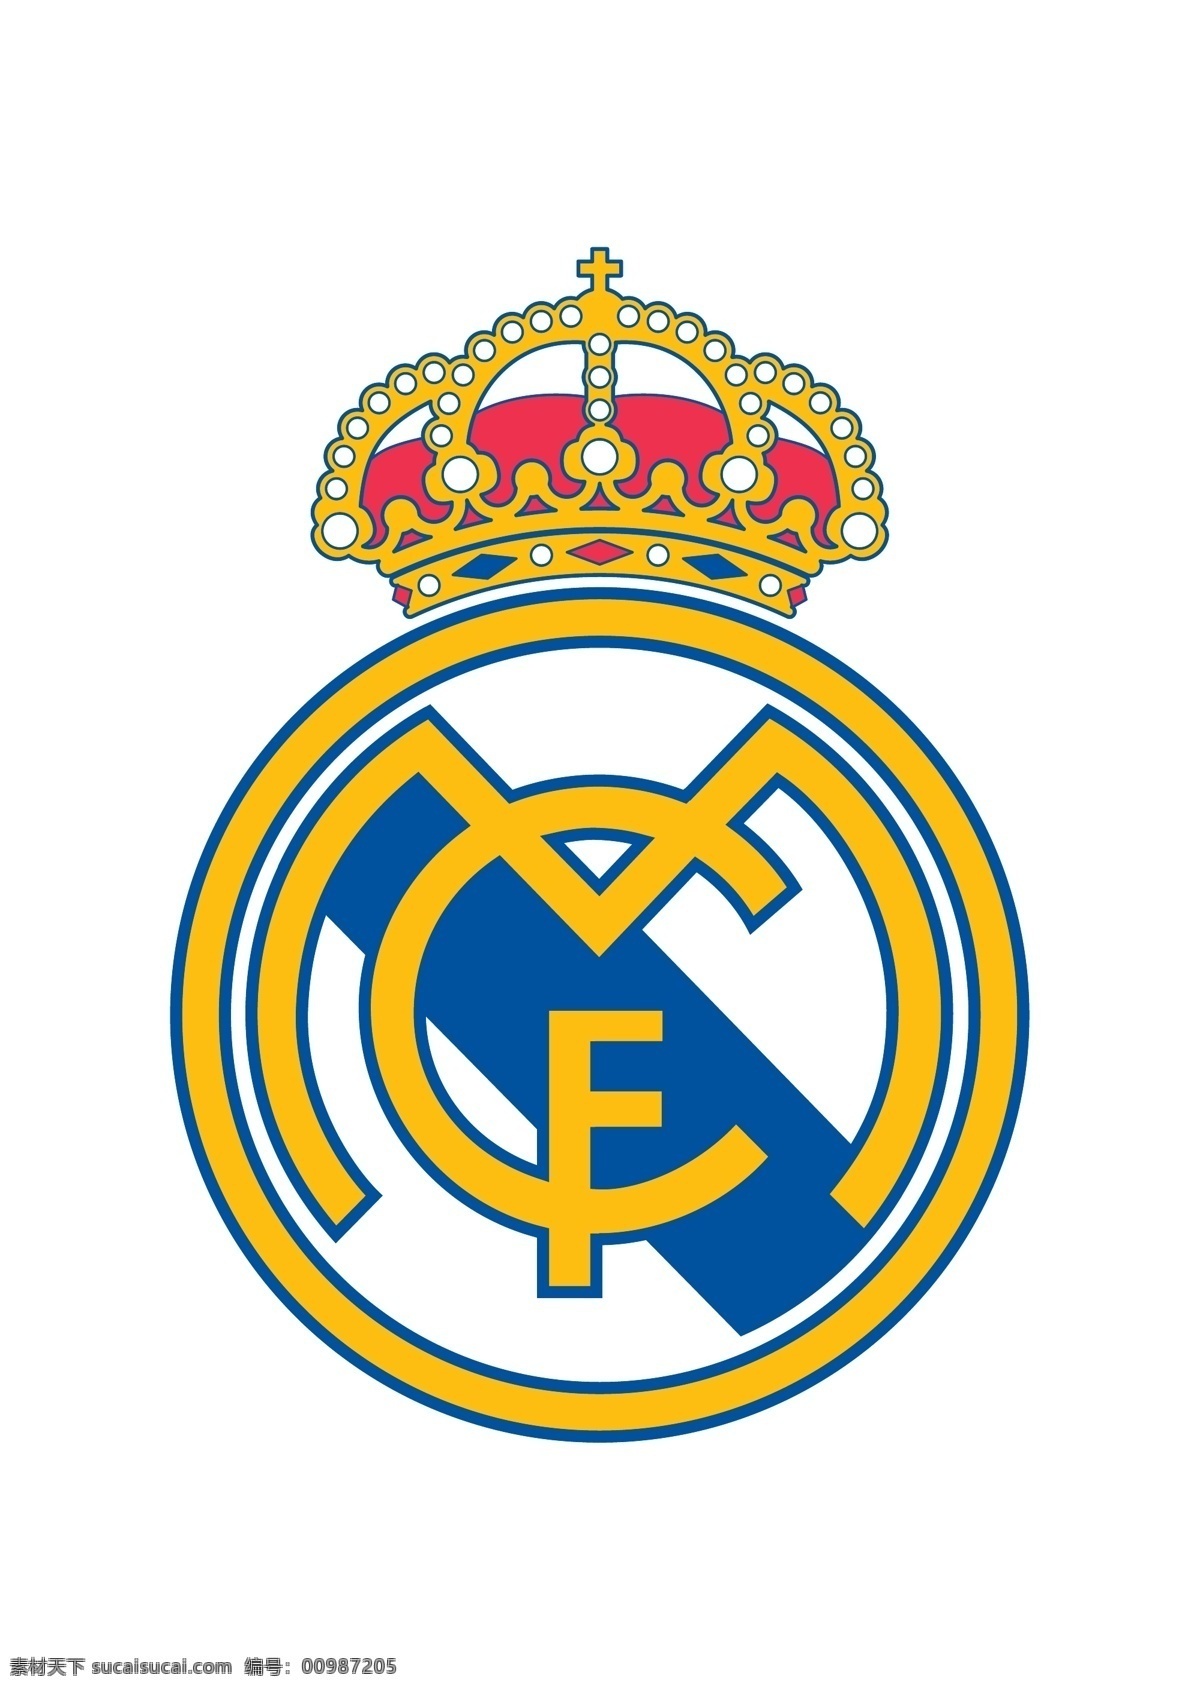 皇家 马德里 足球 俱乐部 徽标 西班牙 甲级 联赛 西甲 欧足联 欧冠 欧洲 冠军联赛 欧联 欧罗巴联赛 欧洲联赛 欧洲超级杯 欧洲主流联赛 logo设计